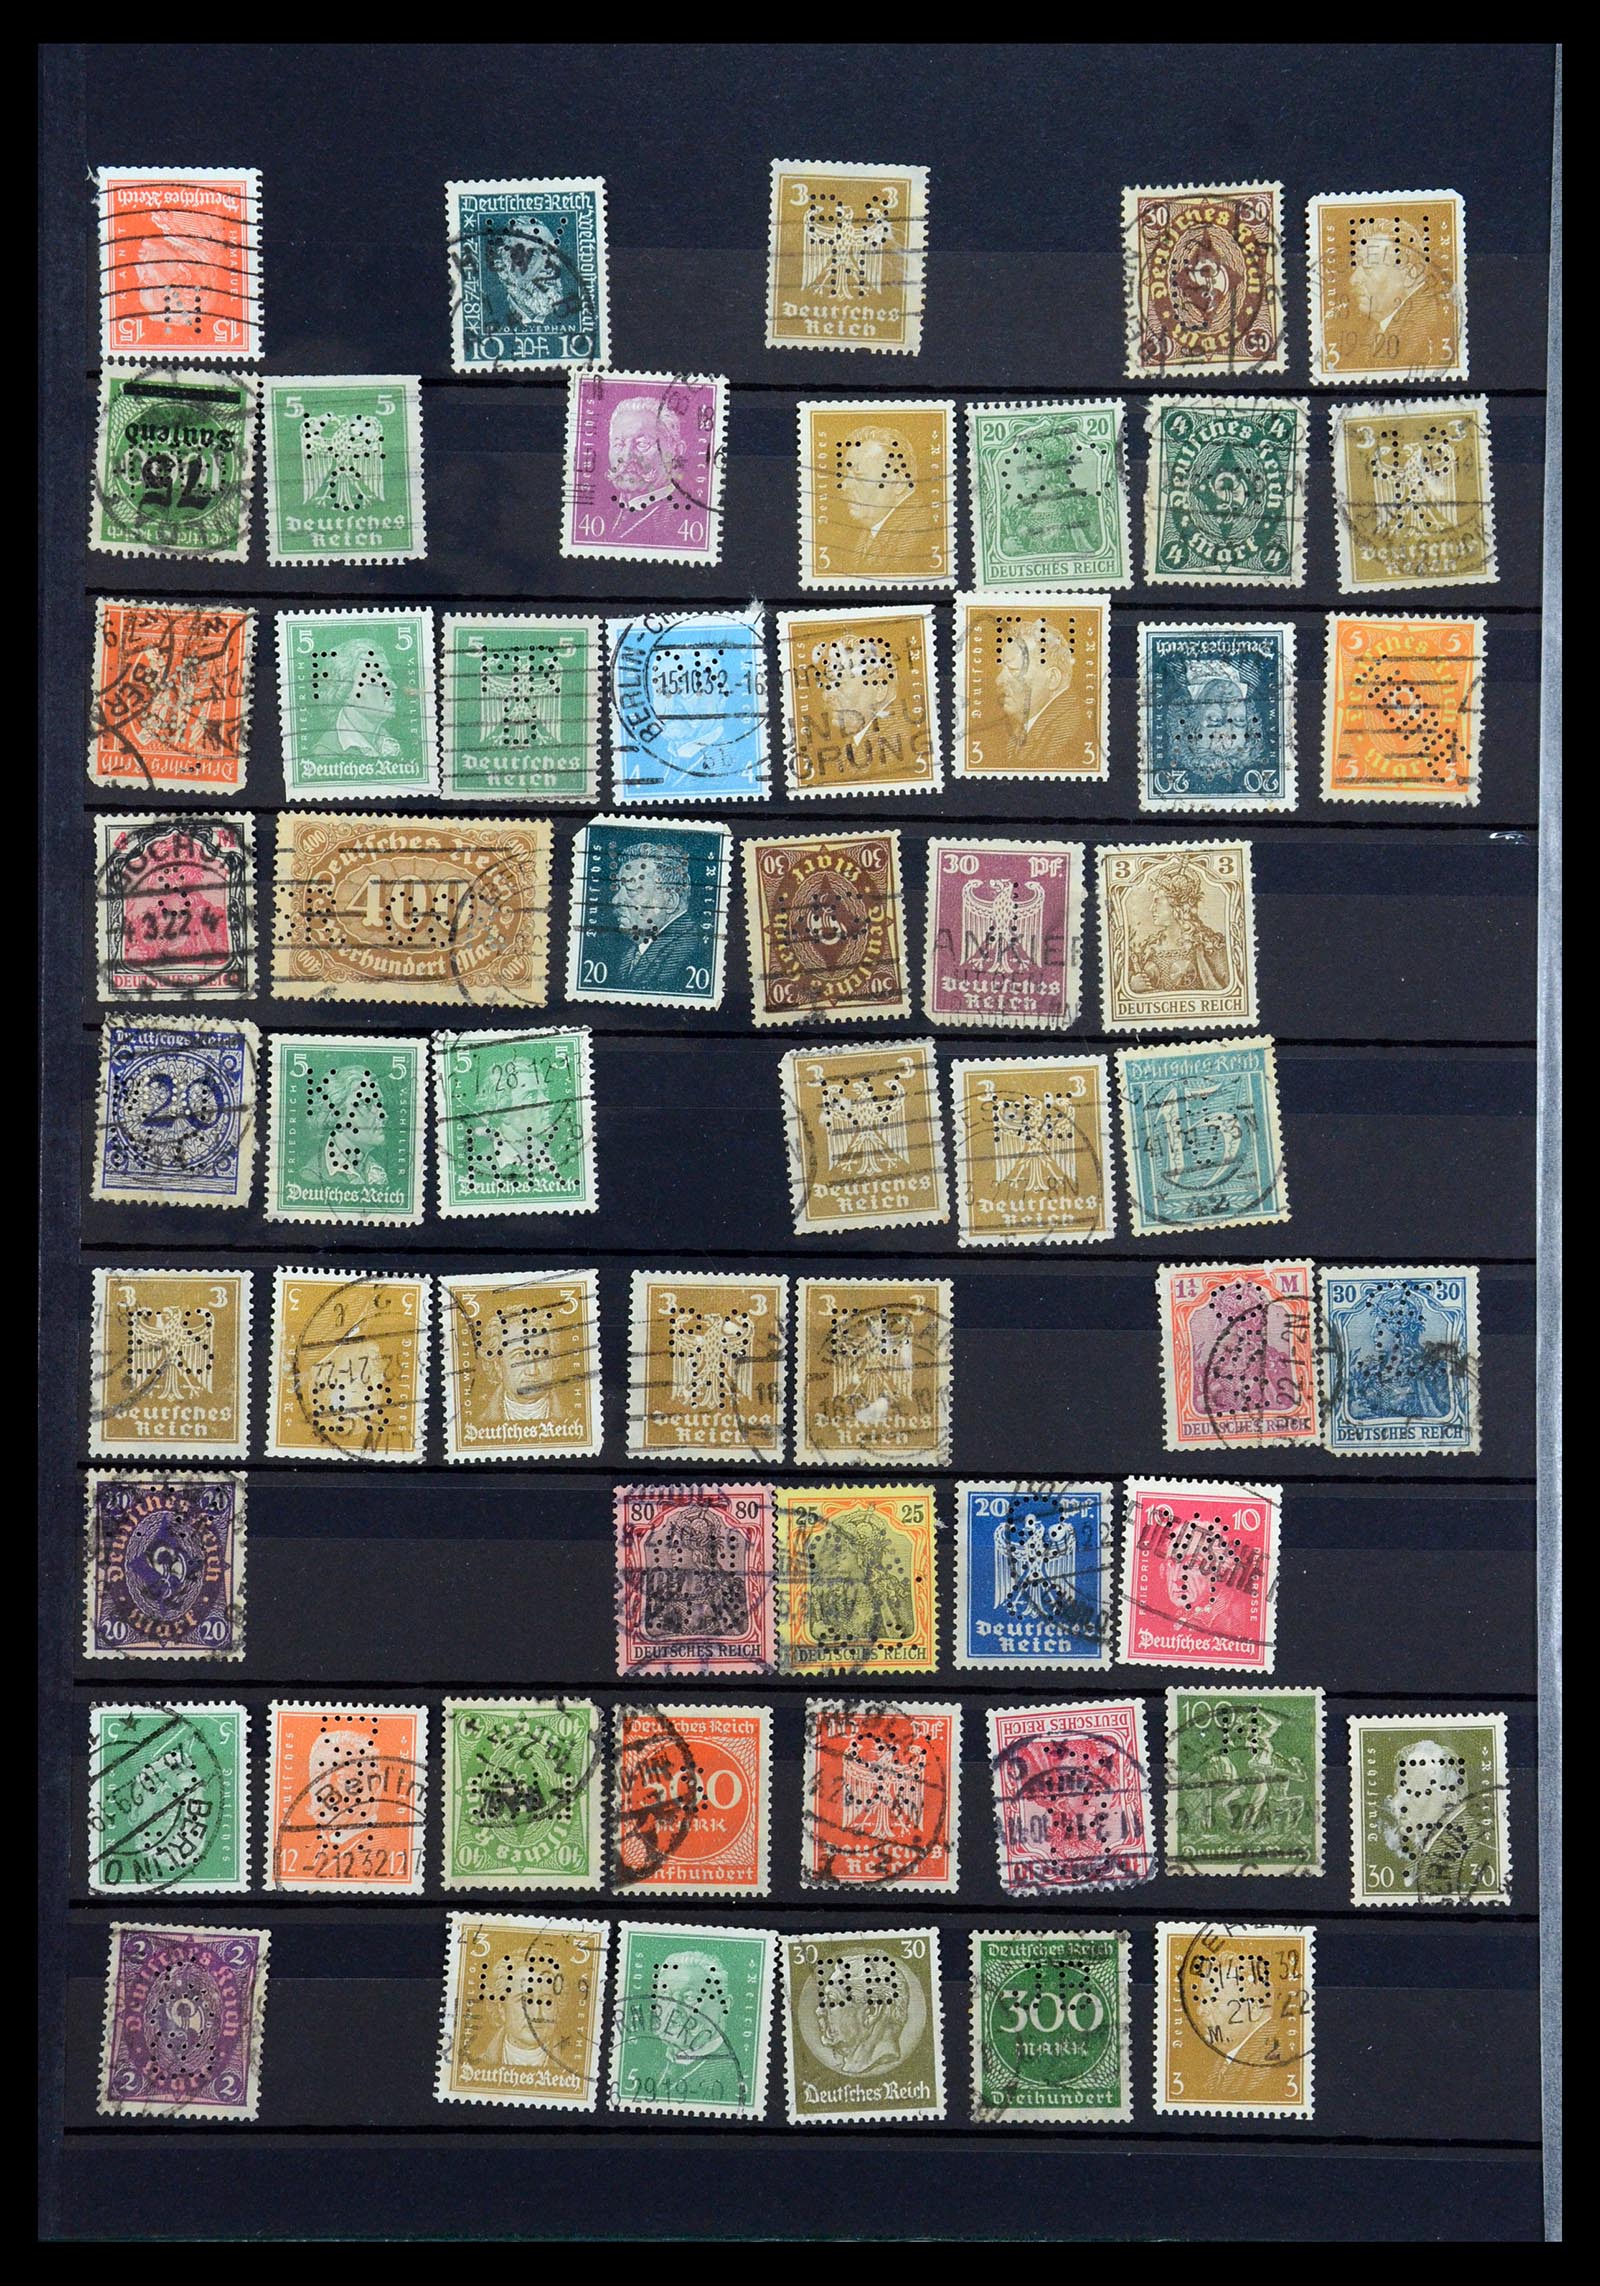 35183 016 - Stamp Collection 35183 German Reich perfins 1880-1945.